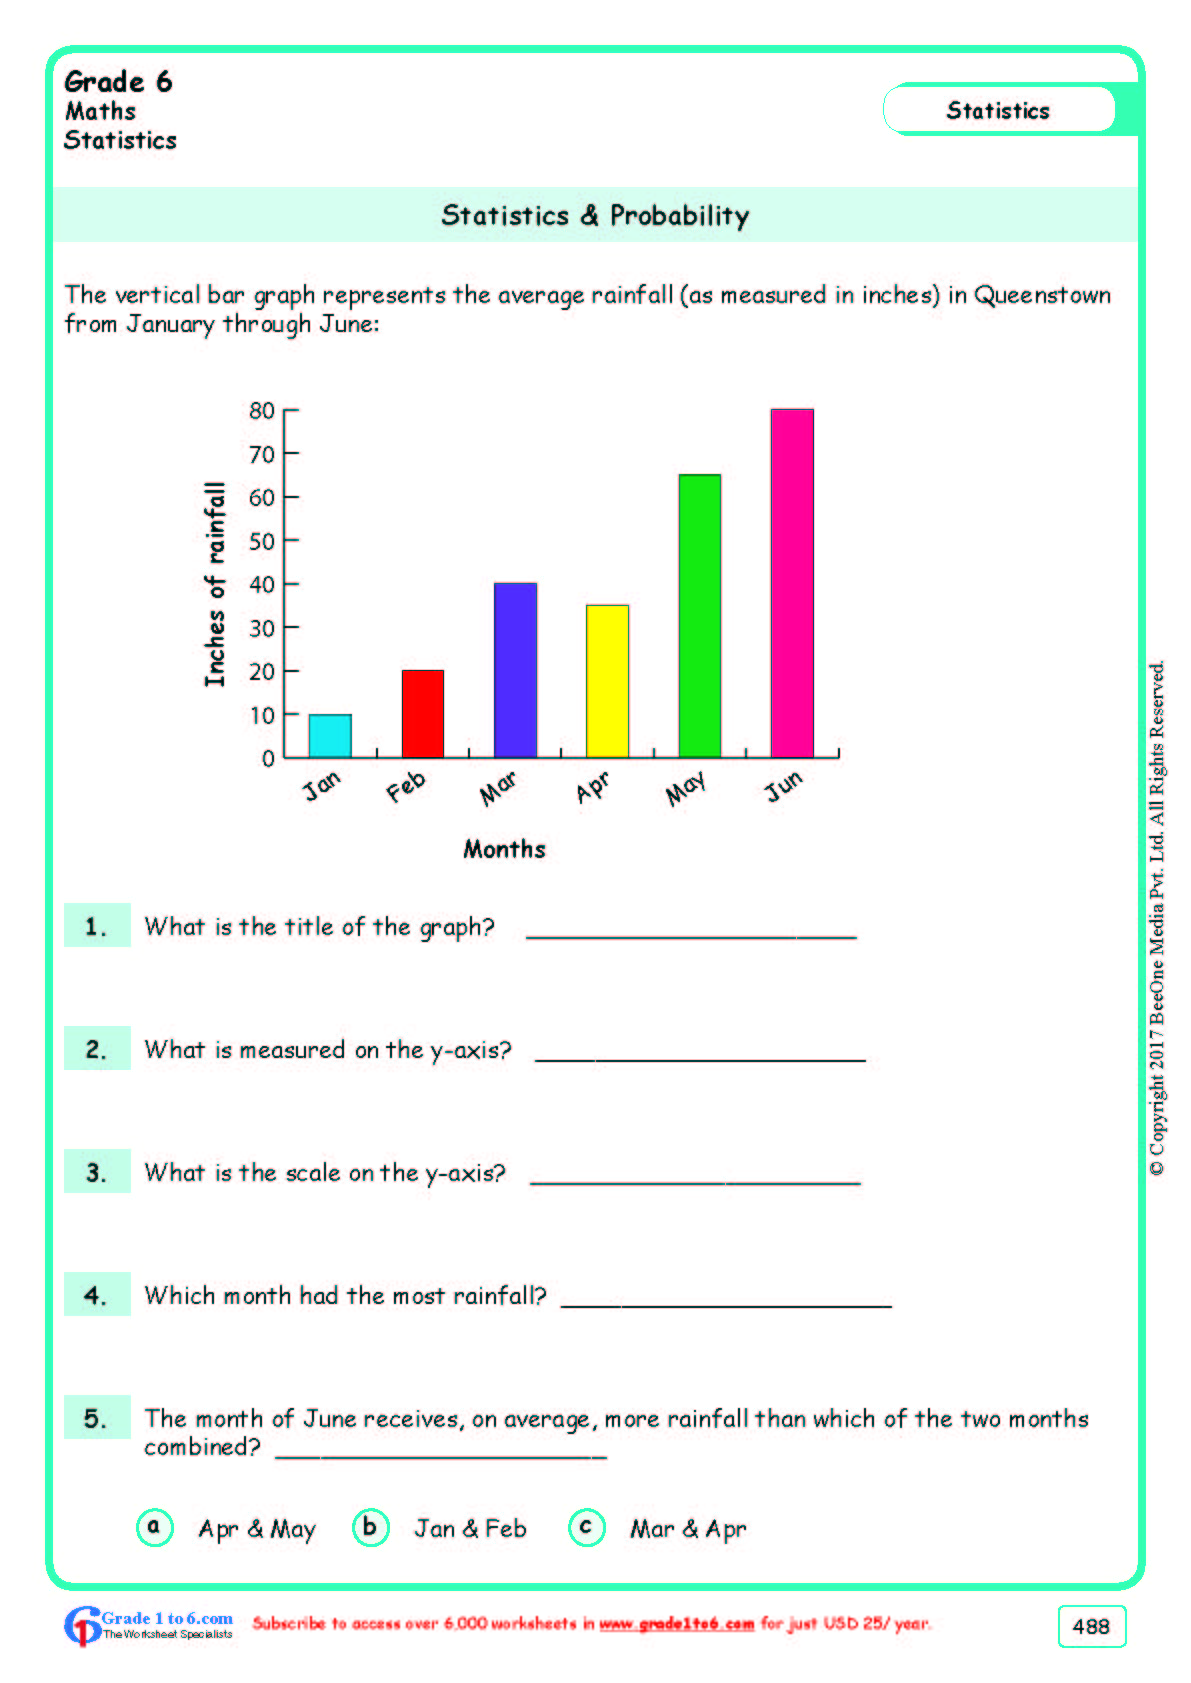 Grade 6 Class Six Statistics Worksheets www grade1to6